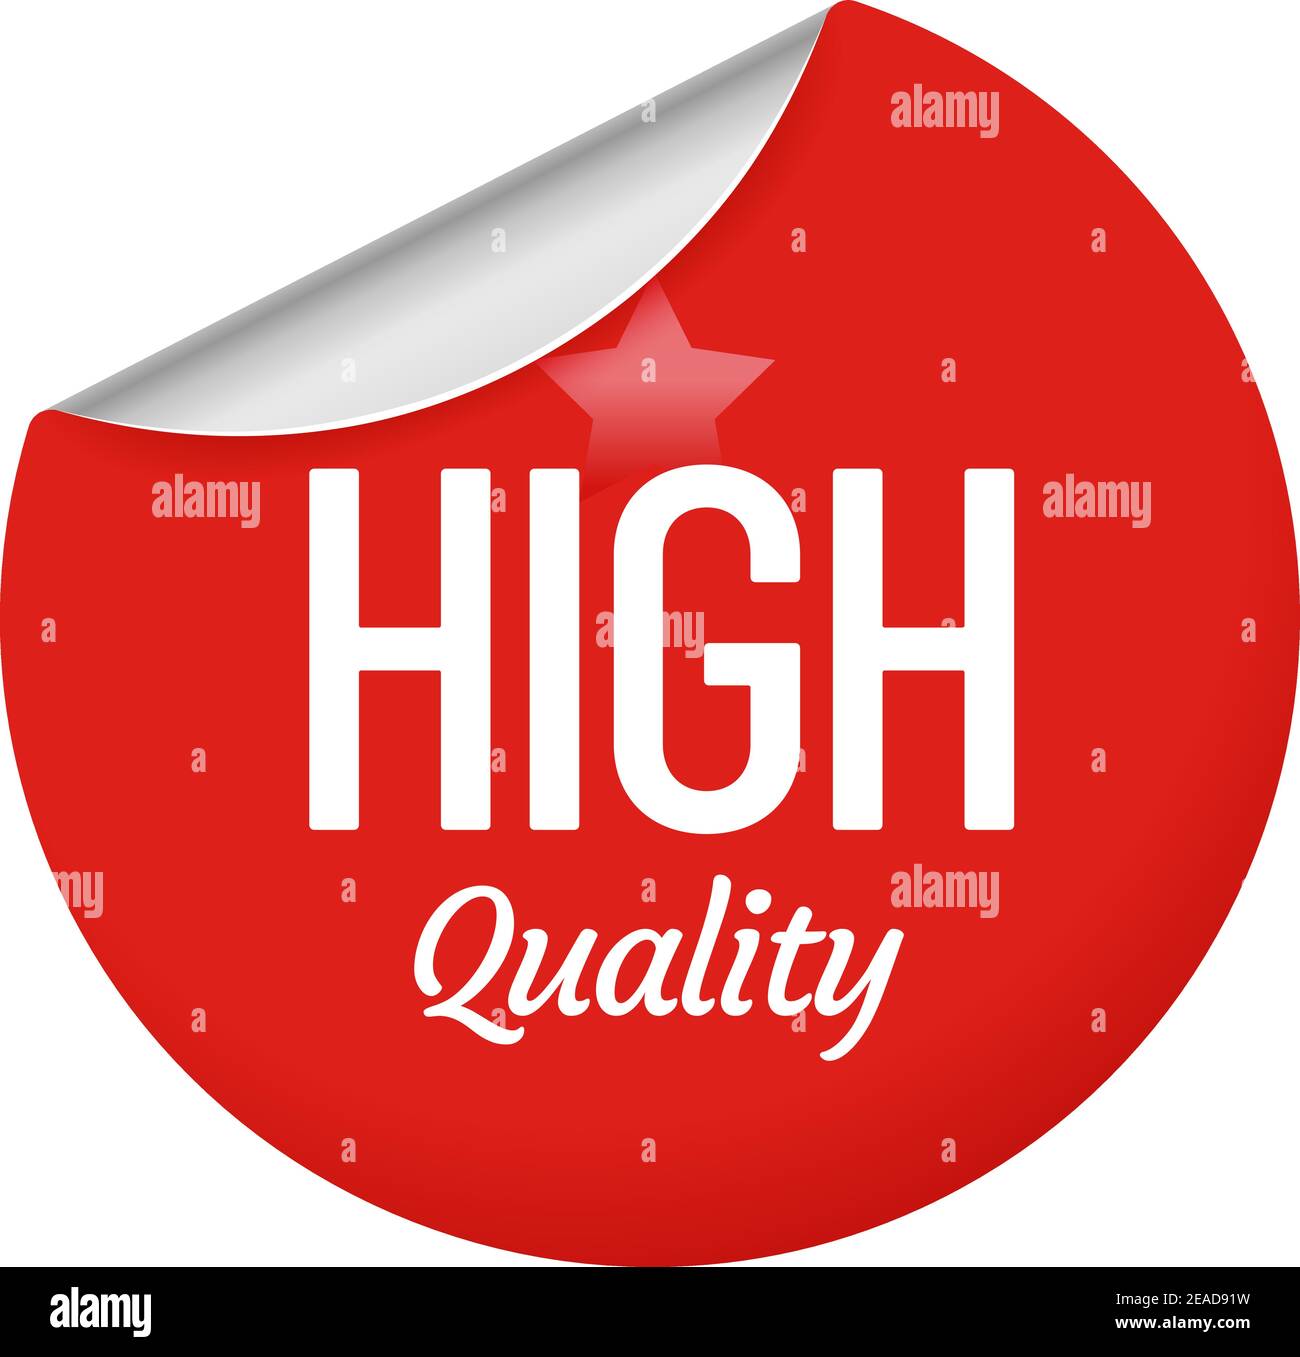 Hochwertiges Sticker-Design mit Stern. Rotes rundes Etikett mit lockiger Kante. Kreis Papierabzeichen für Commerce-Kampagne Stock Vektor